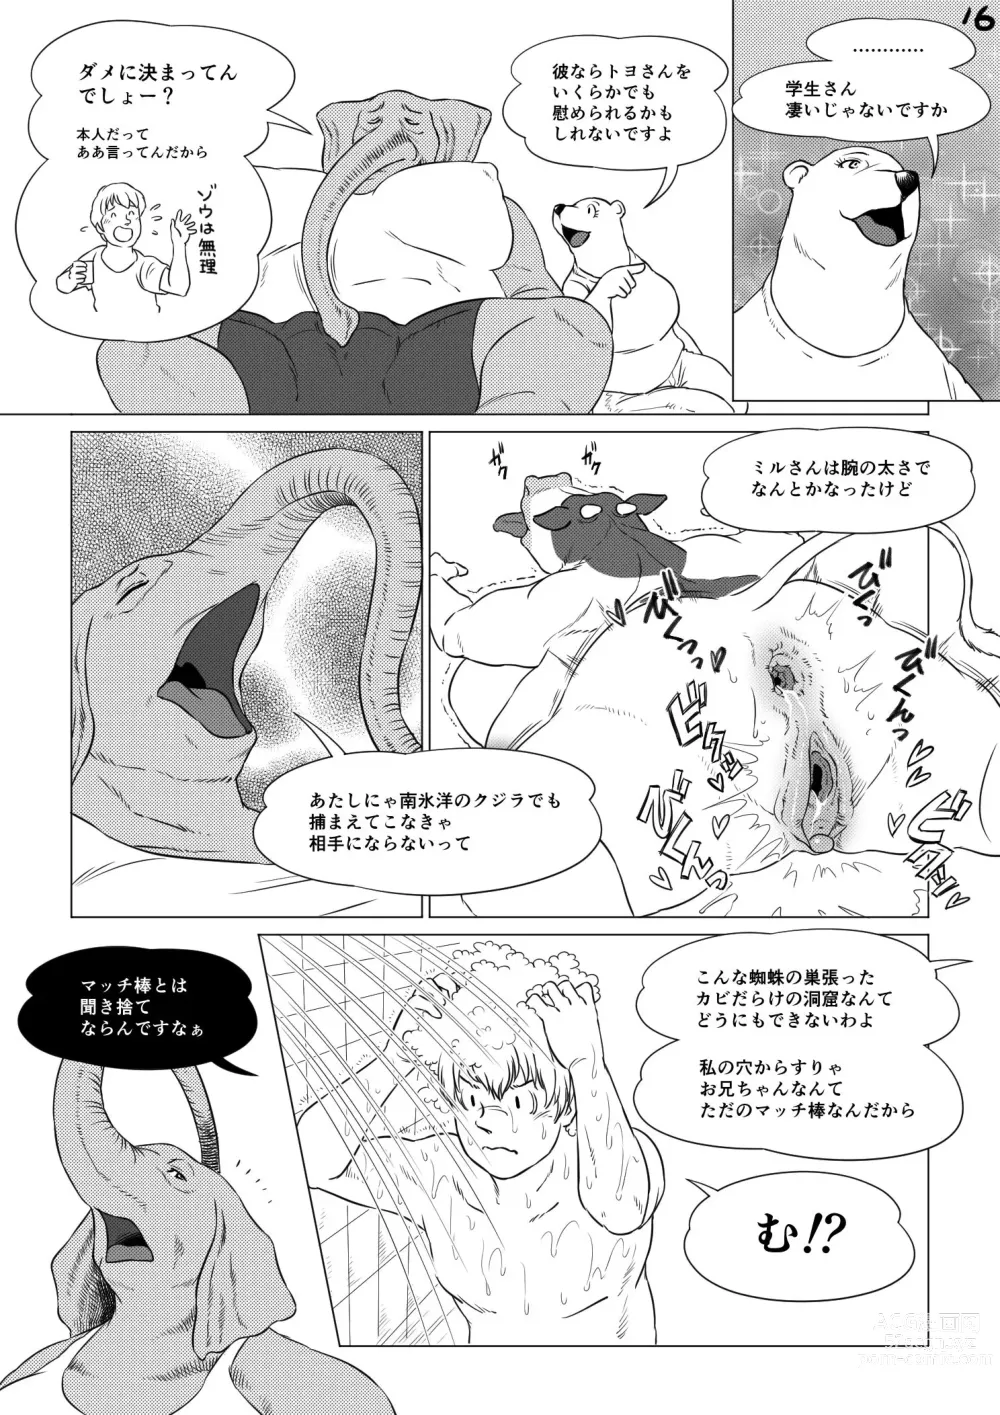 Page 16 of doujinshi Atsumure Doubutsu no Sakari Part 3